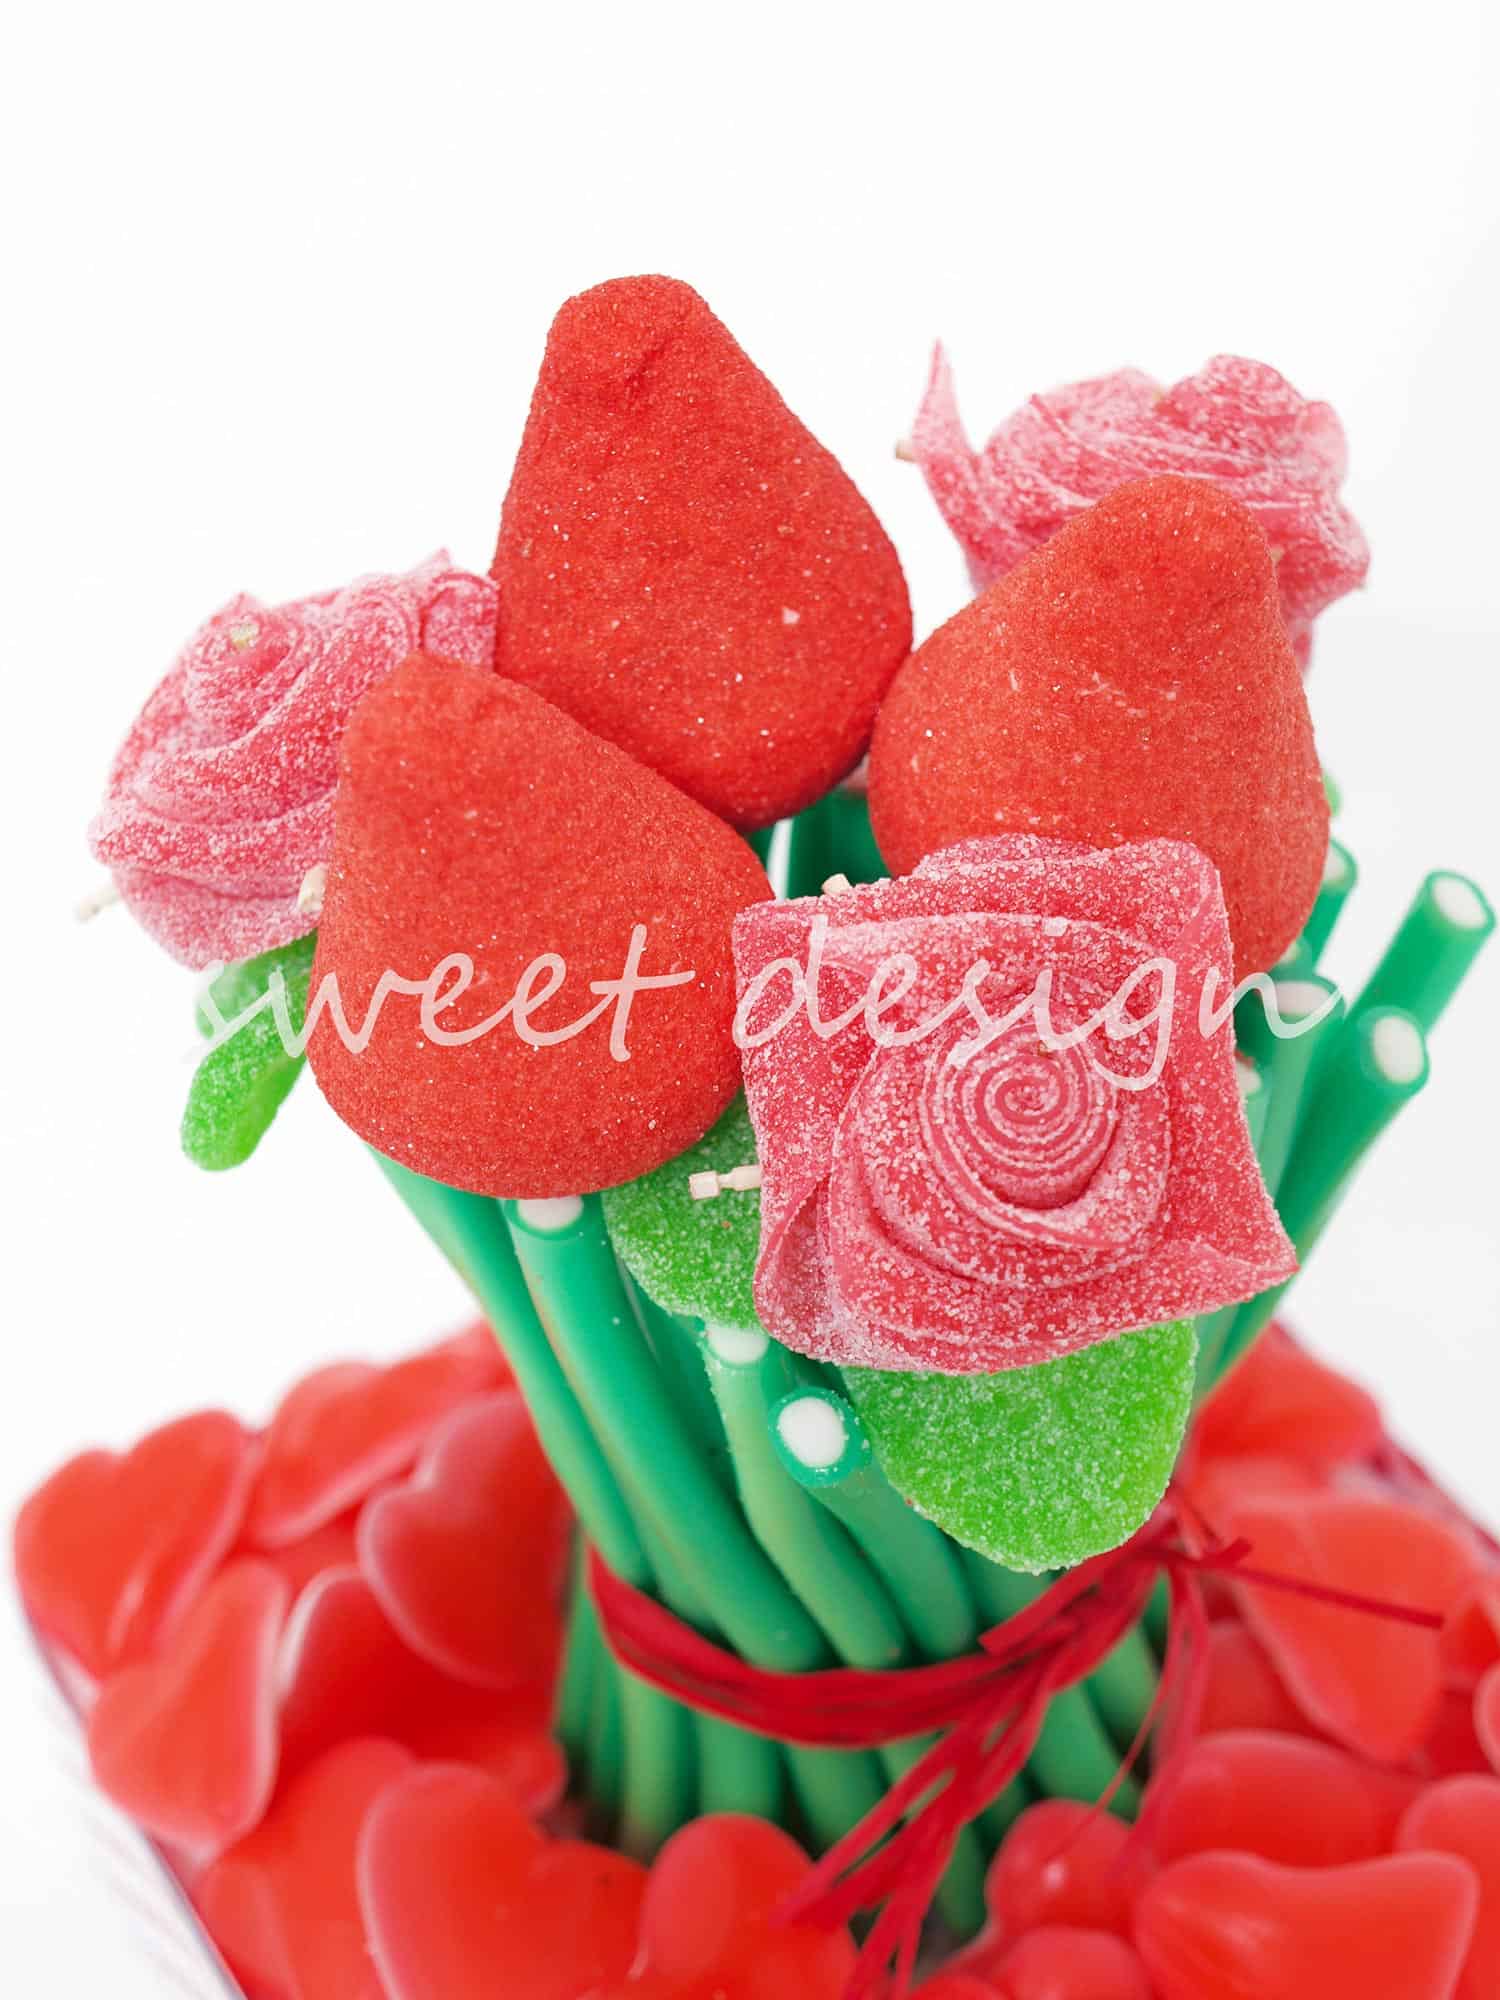 Ramo de Rosas Dulces en Cajita Transparente - Sweet Design chuches